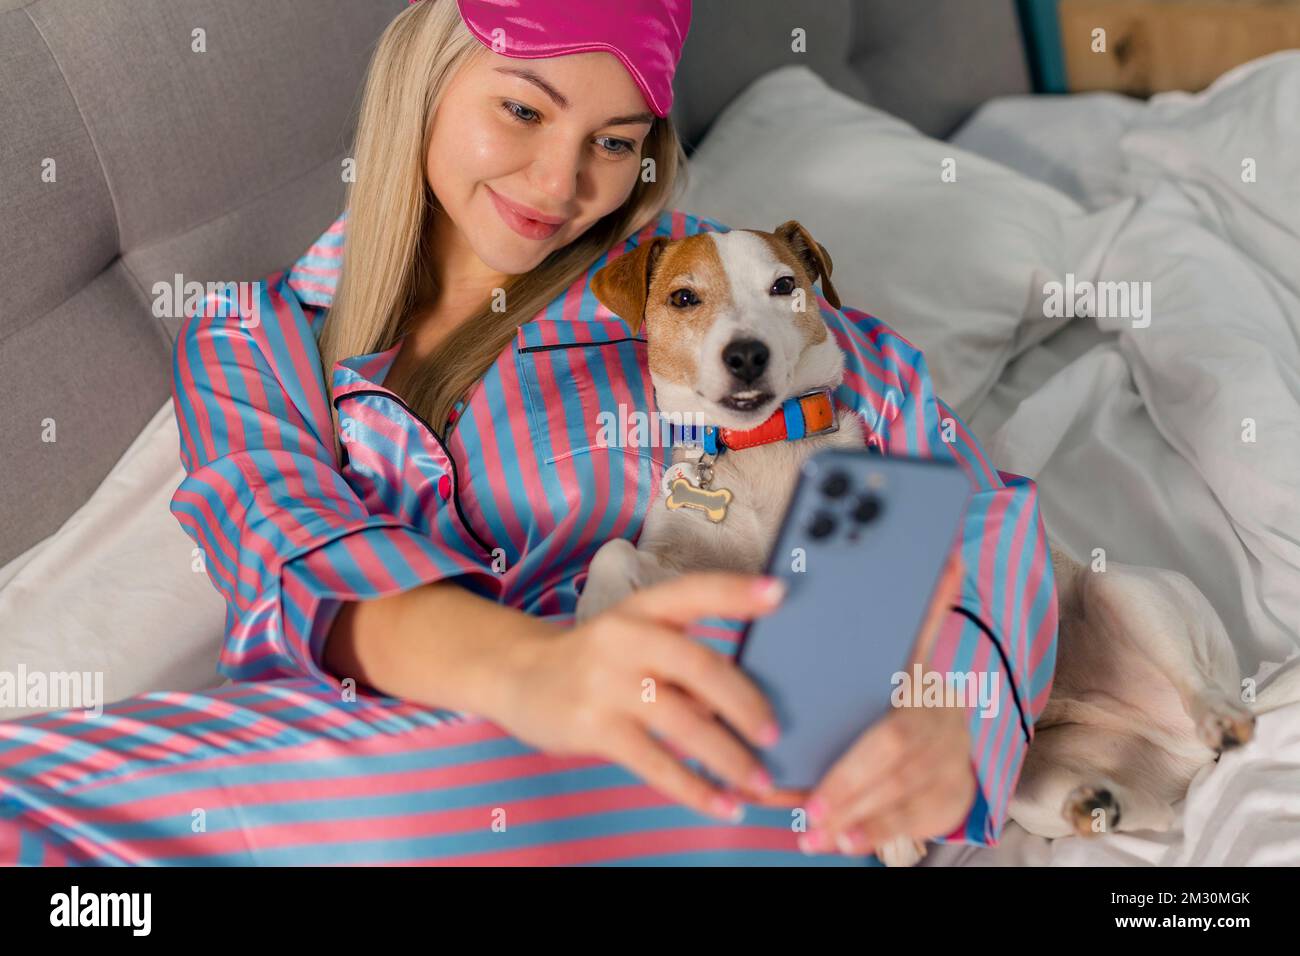 Porträt einer schönen, fröhlichen Frau im Pyjama, die den Hund umarmt und mit dem Handy ein lächelndes Selfie macht, während sie nach dem Schlafen oder Nickerchen auf dem Bett liegt Stockfoto